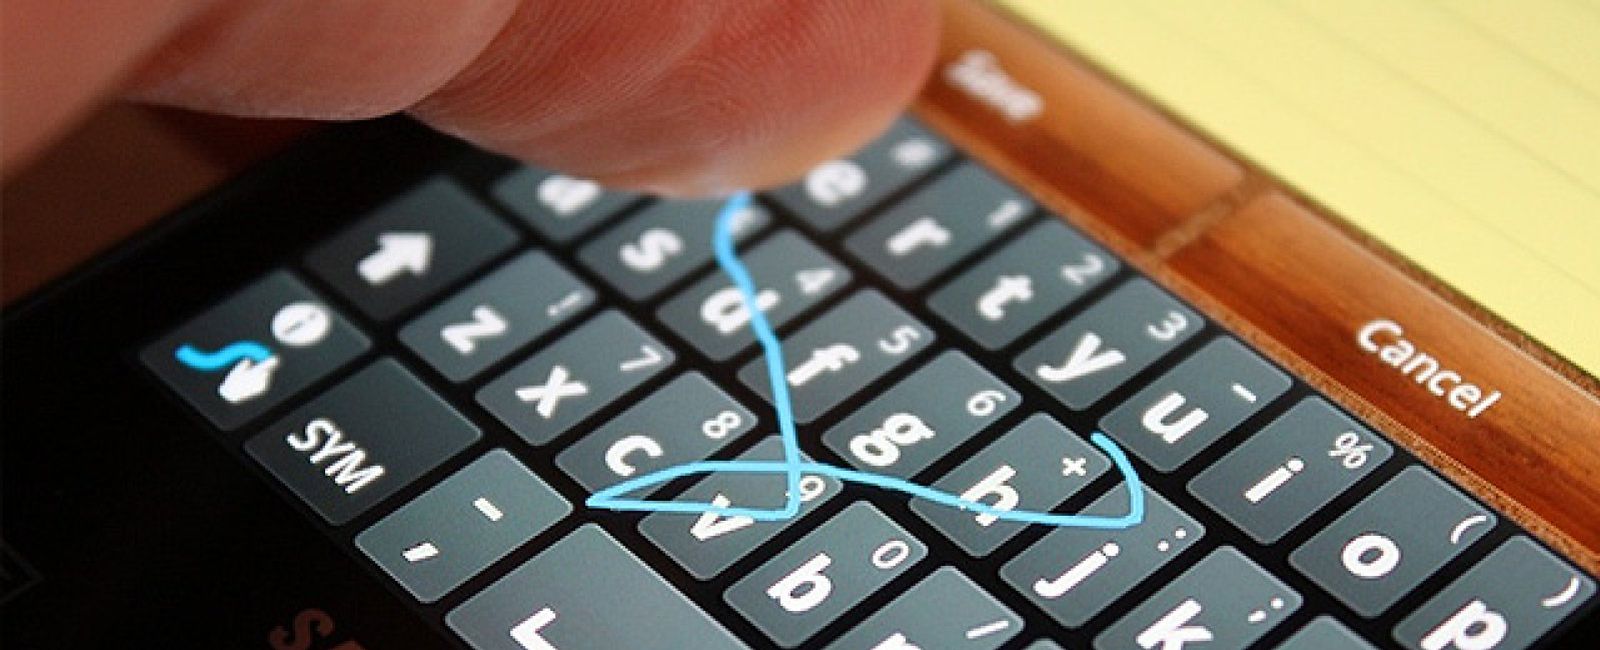 Foto: ¿Harto del teclado de tu móvil? Éstas son las mejores alternativas